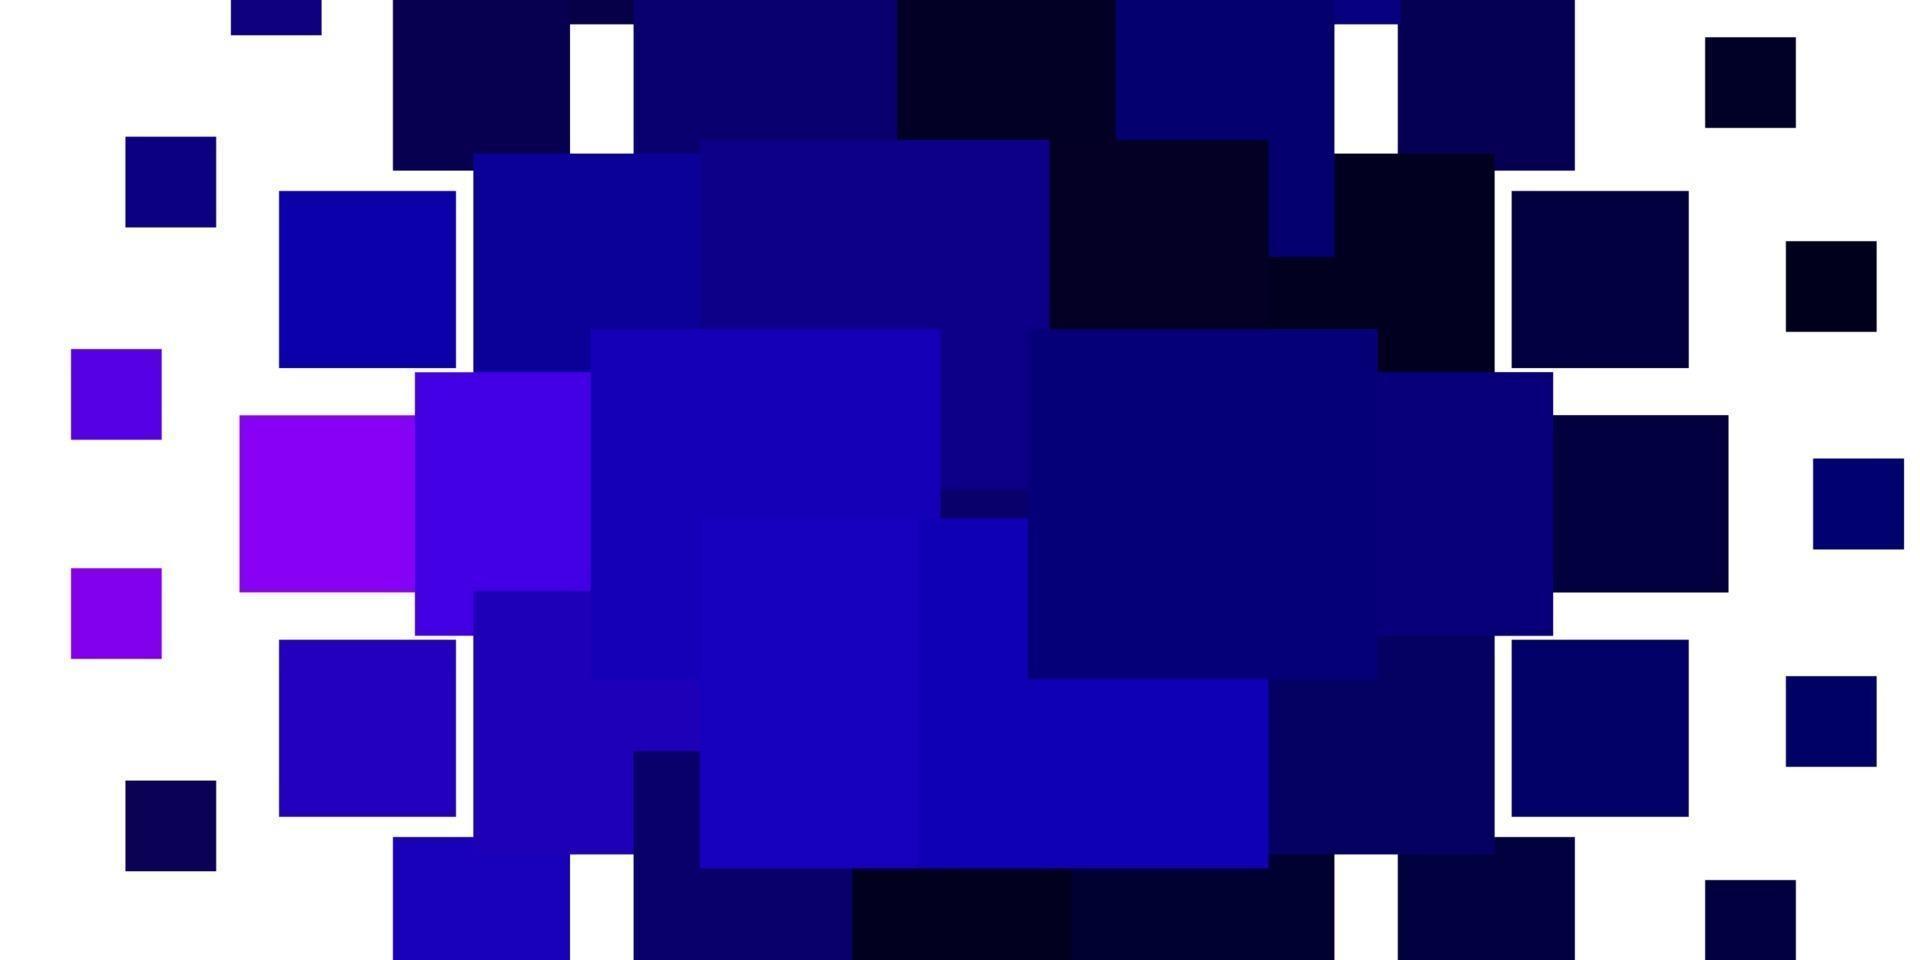 texture de vecteur rose clair, bleu dans un style rectangulaire.